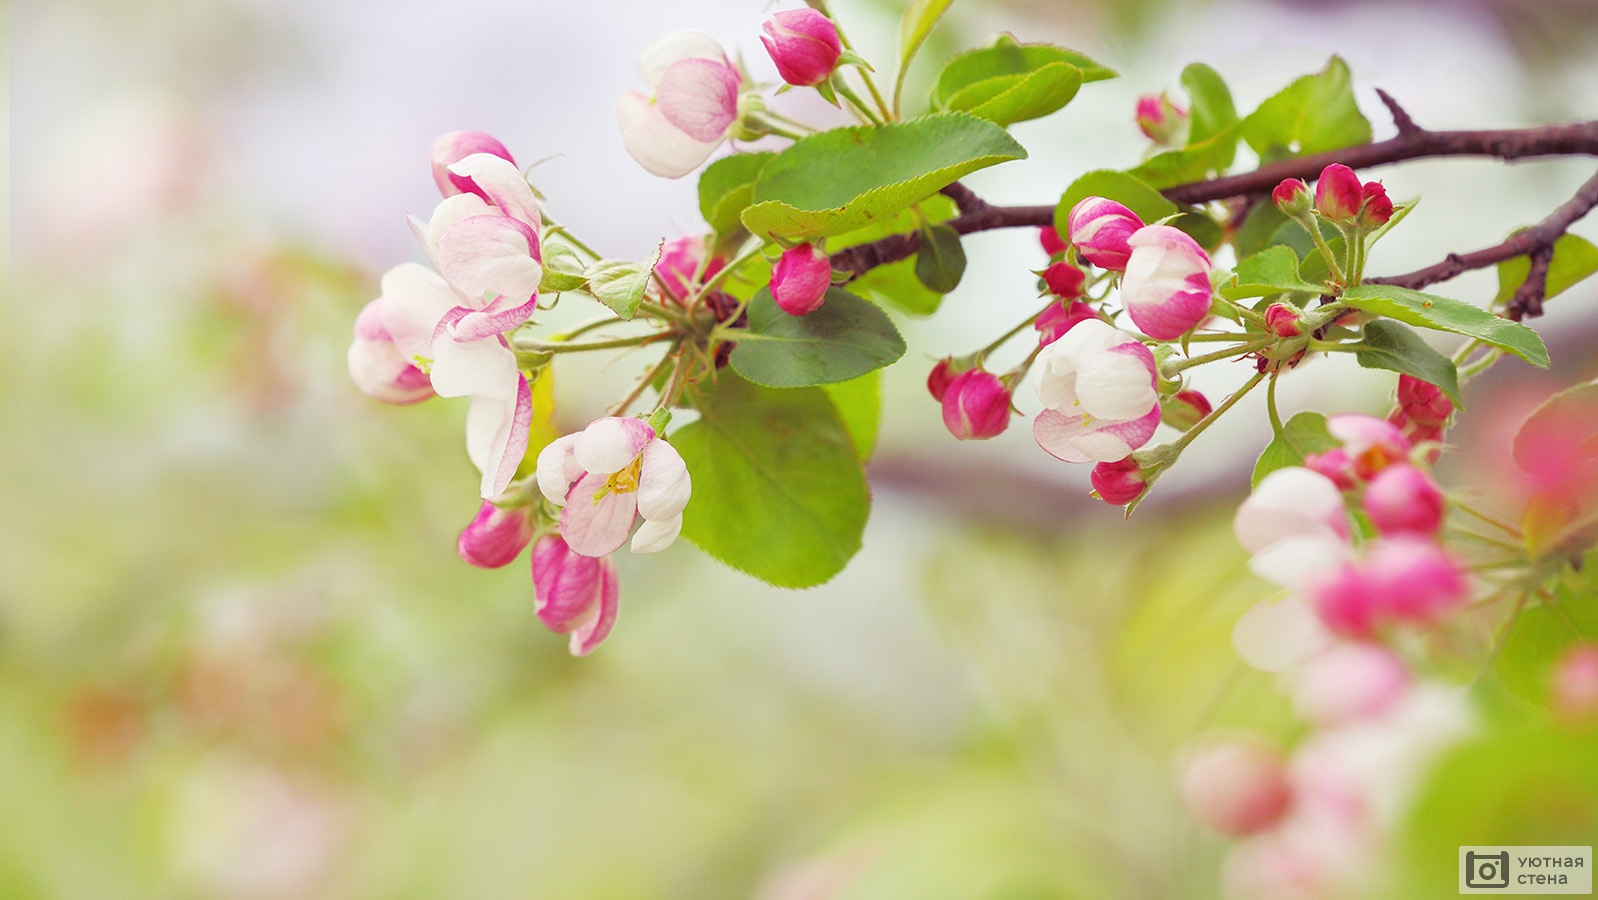 Фотообои "Ветка яблони с множеством цветов" - Арт. 170009